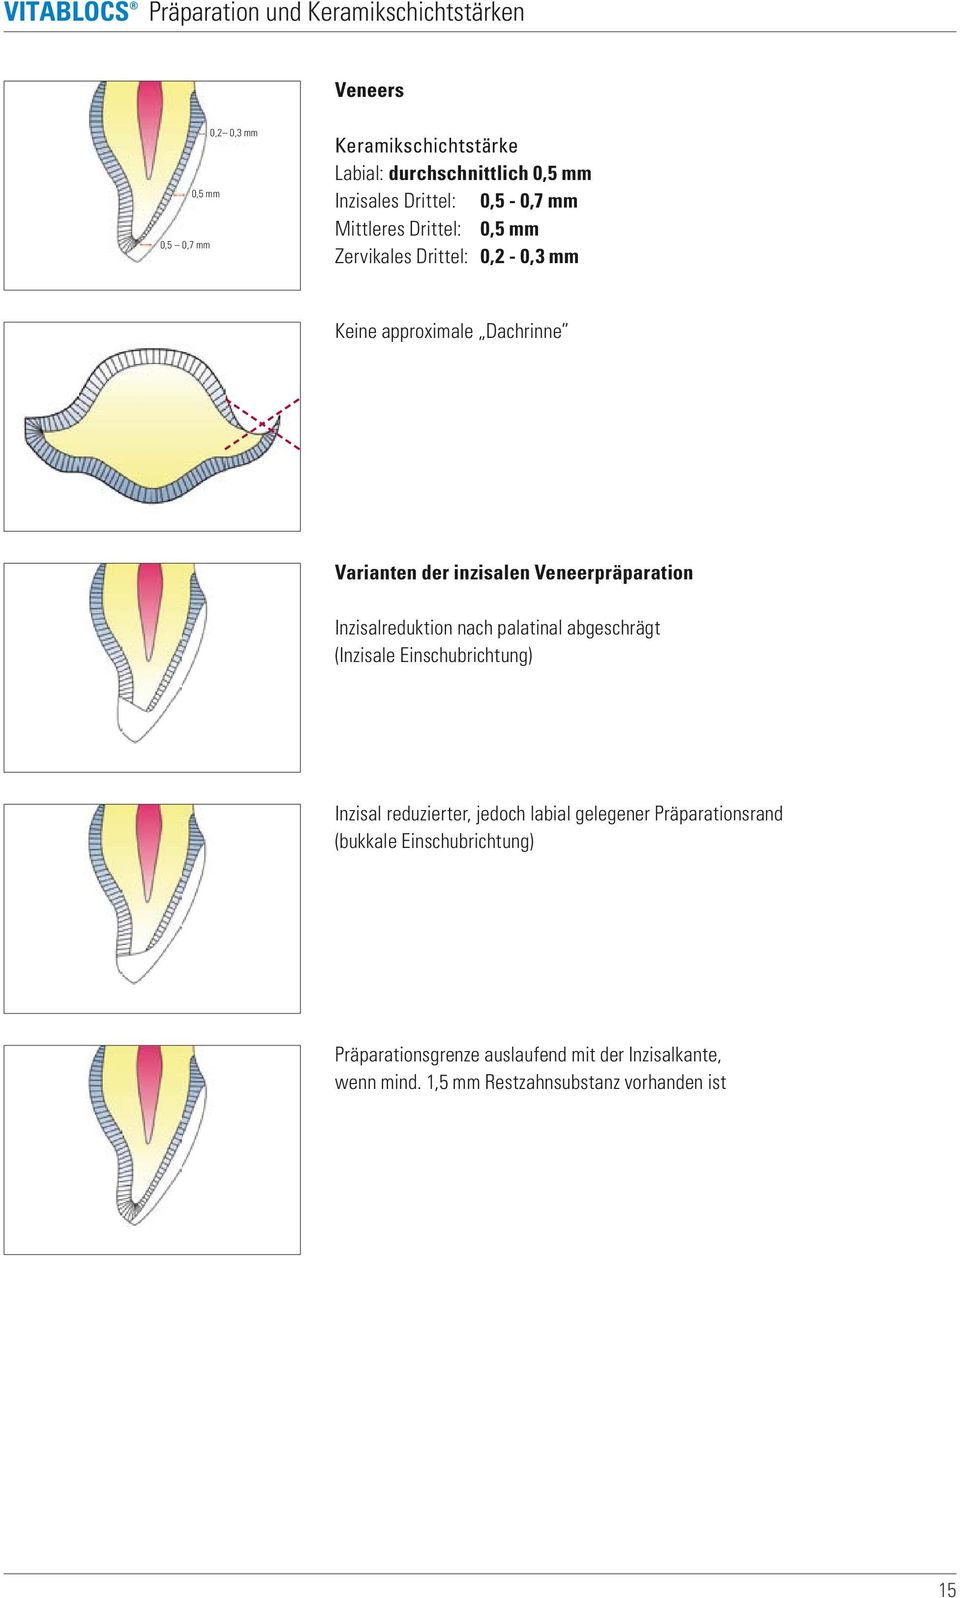 Veneerpräparation Inzisalreduktion nach palatinal abgeschrägt (Inzisale Einschubrichtung) Inzisal reduzierter, jedoch labial gelegener